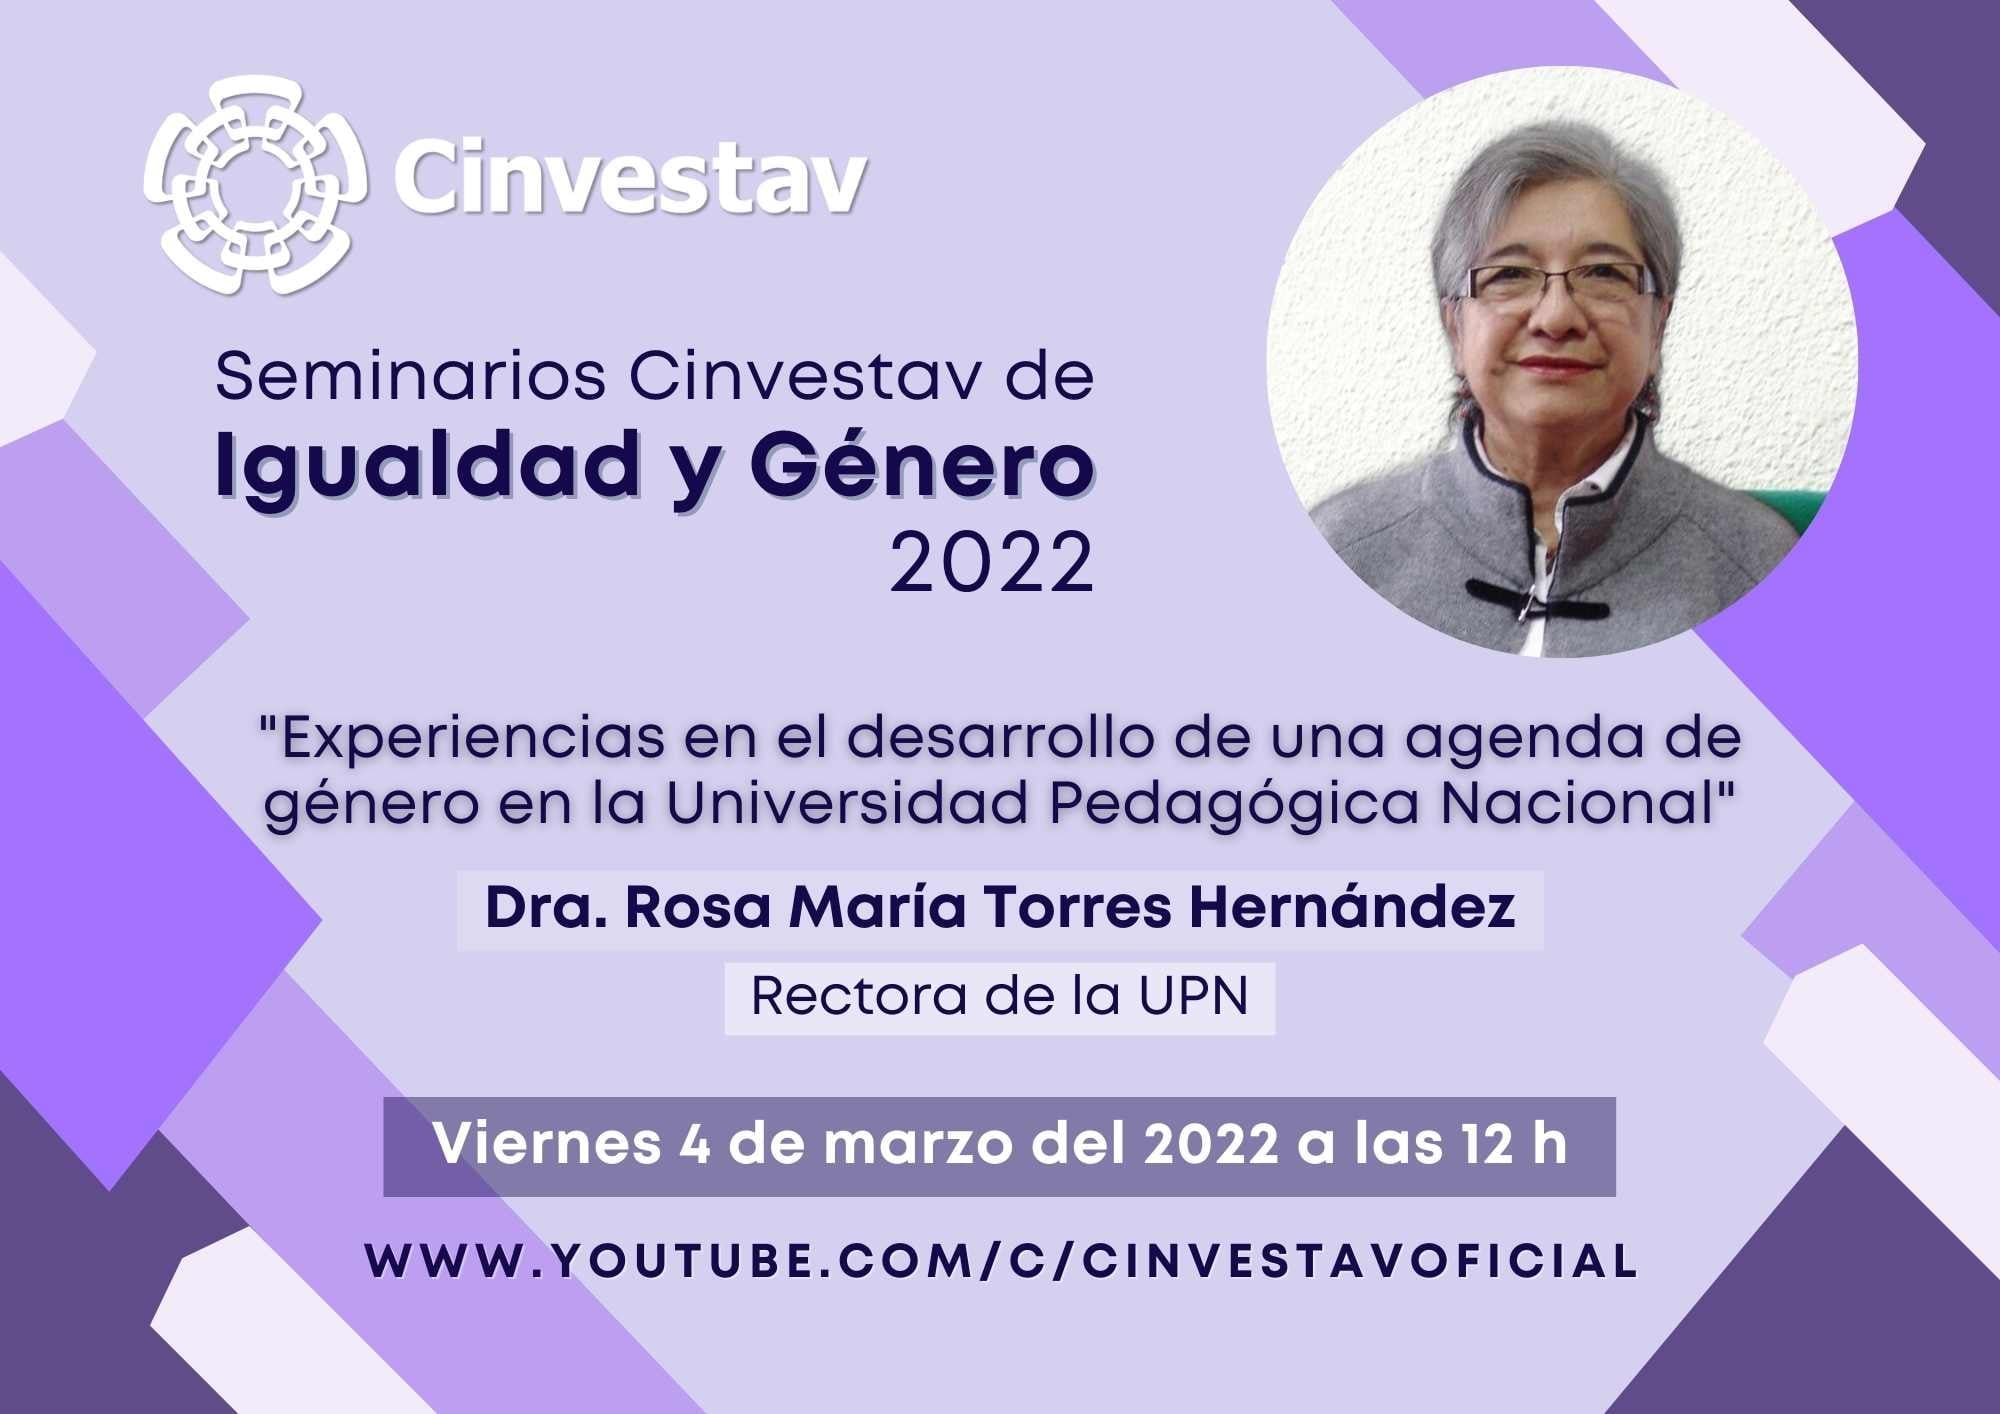 Seminarios Cinvestav de Igualdad y Género: Dra. Rosa María Torres